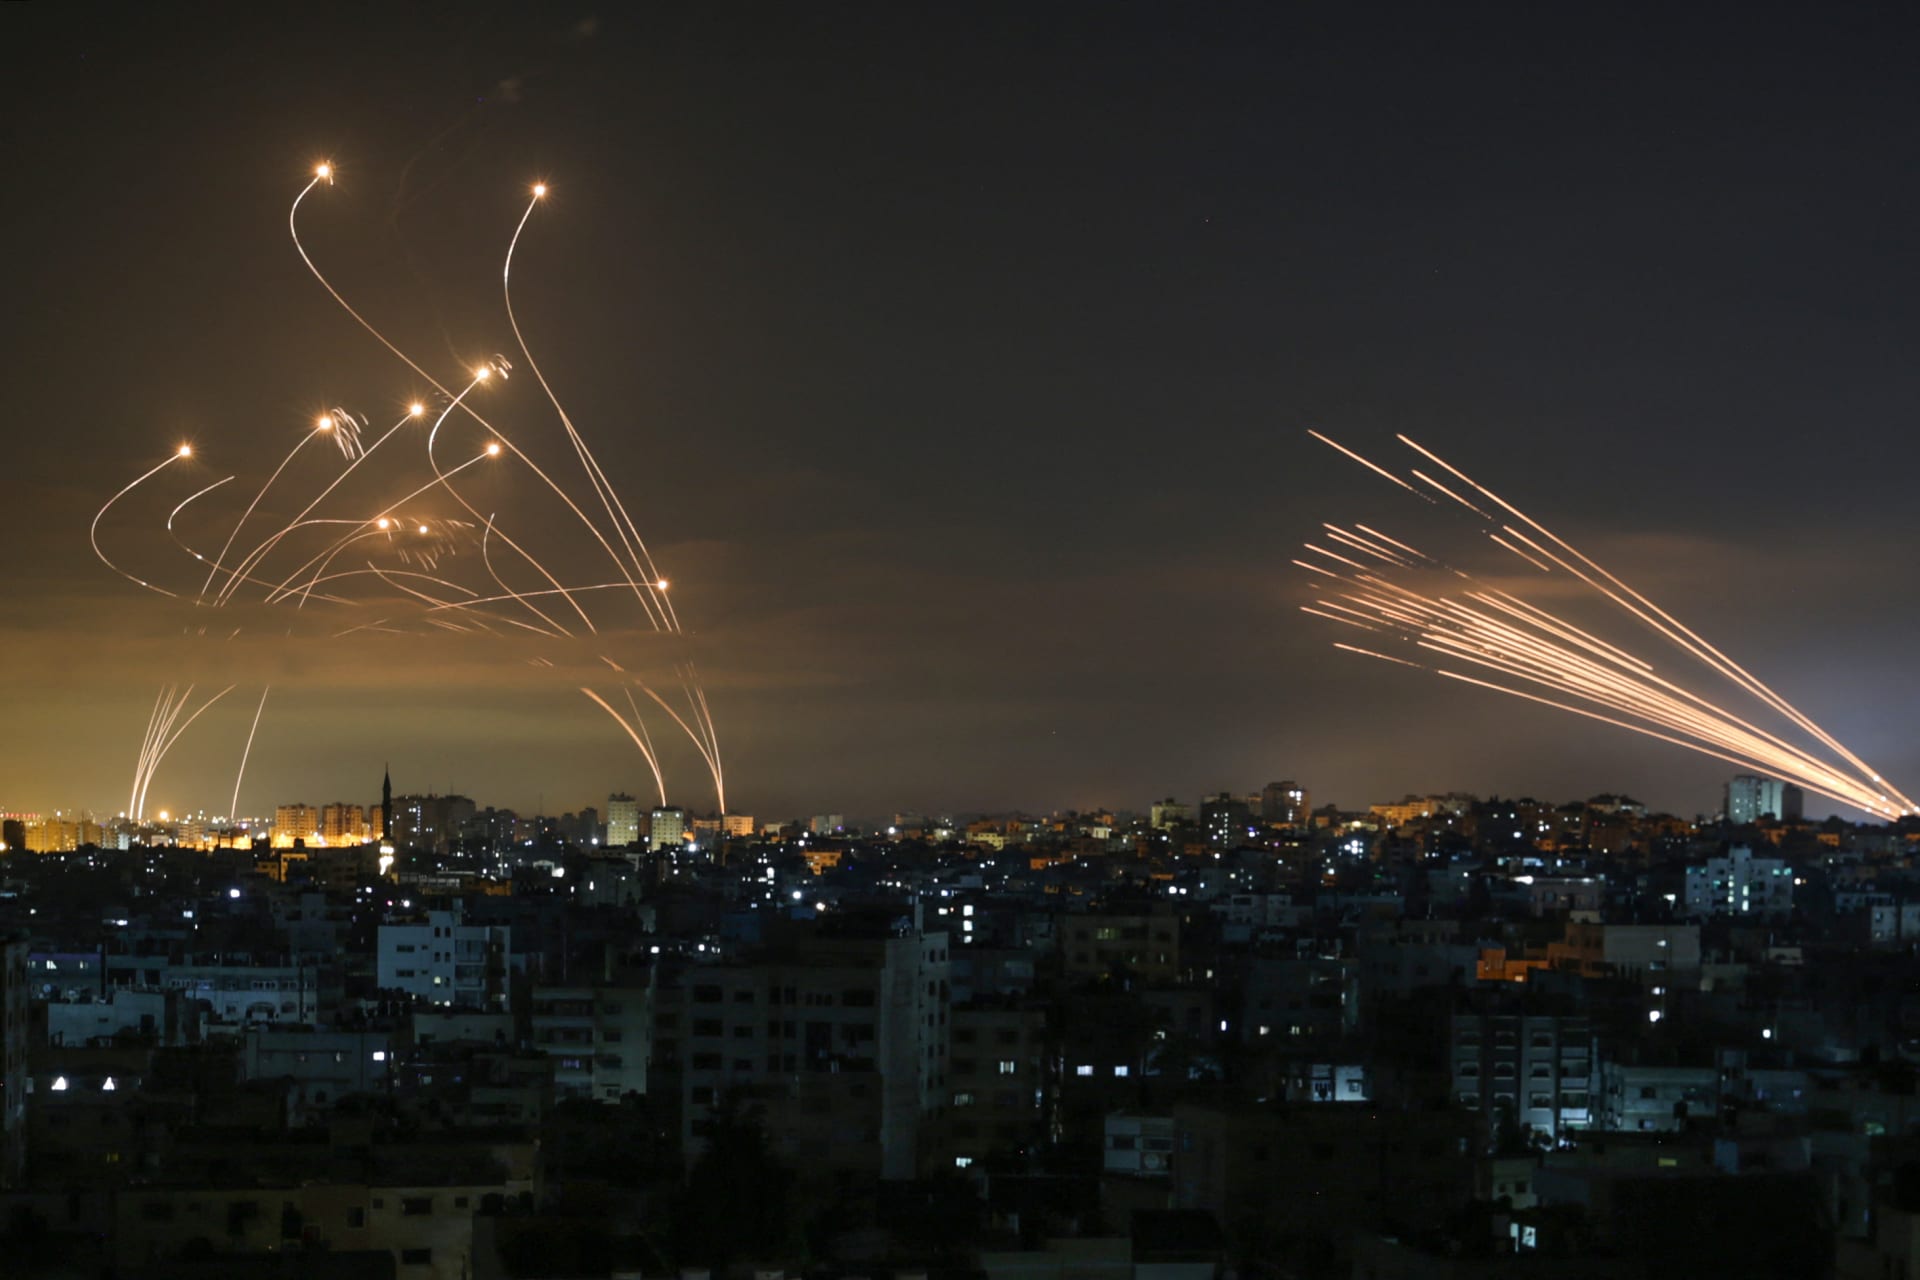  لحظة اعتراض نظام القبة الحديدية صواريخ أطلقتها حركة حماس من بيت لاهيا في شمال قطاع غزة - 14 مايو 2021.